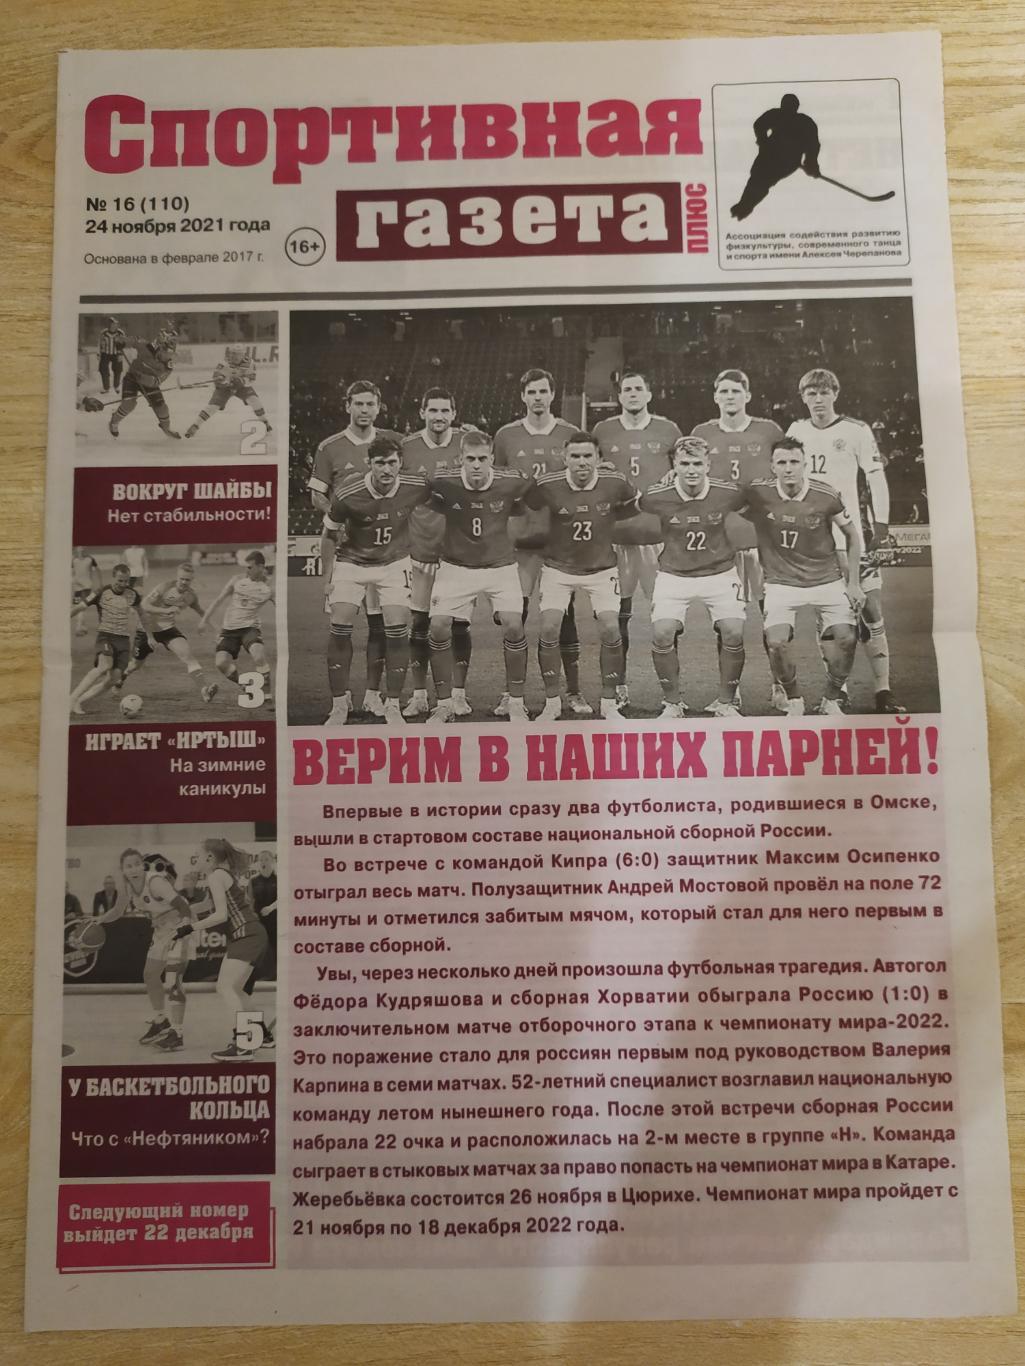 Спортивная газета(Омск). #16. 24/11/2021